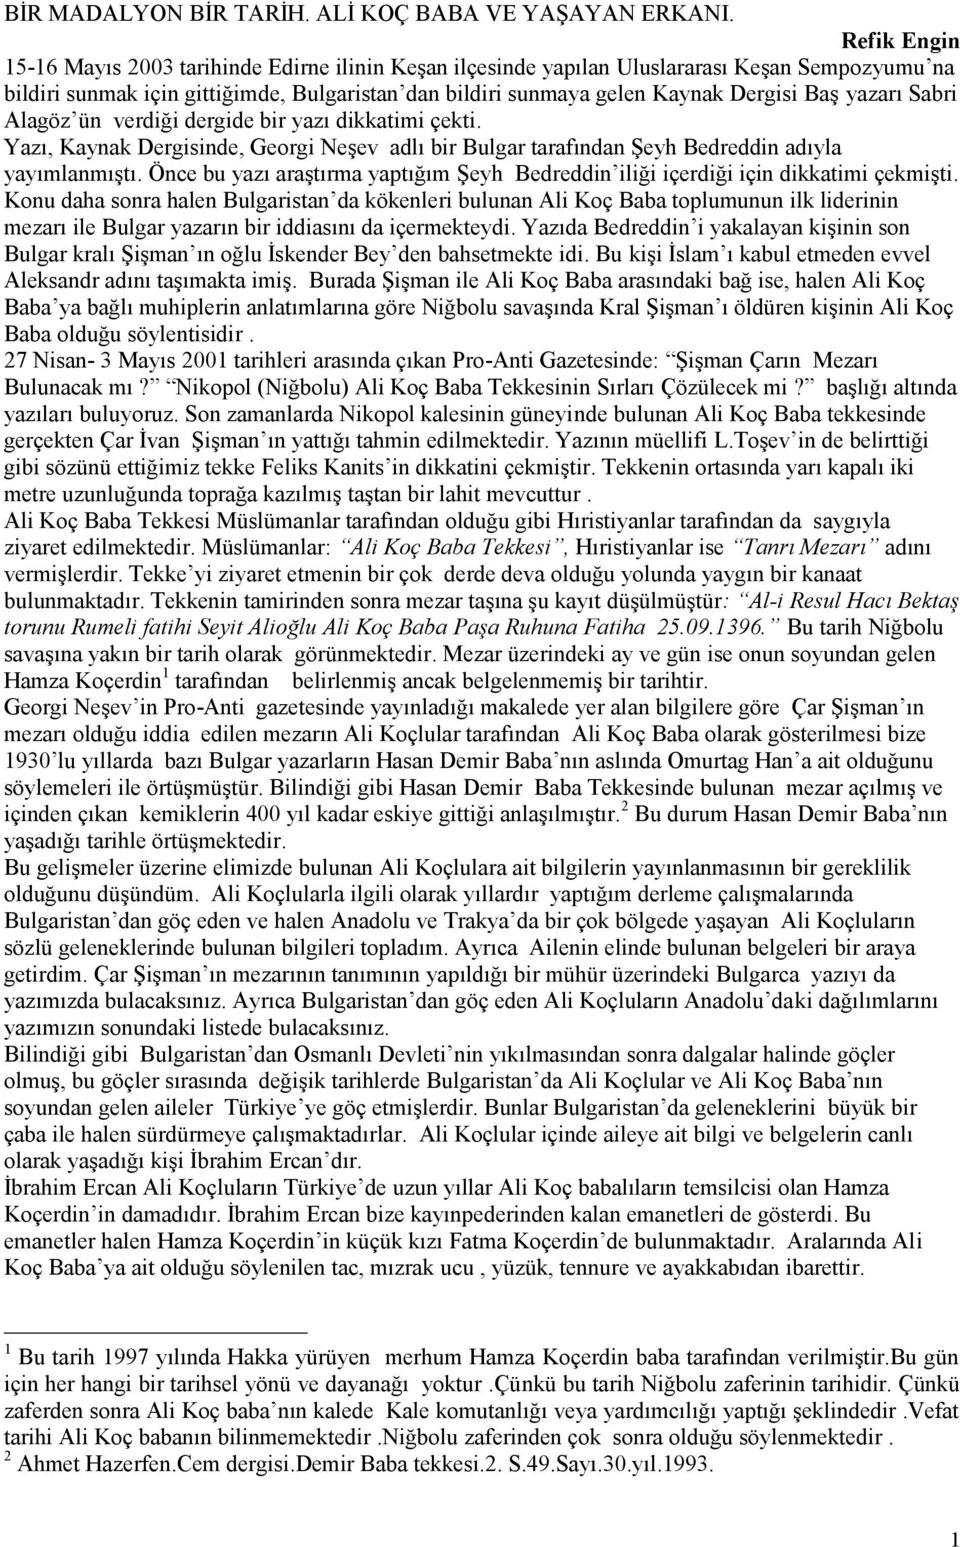 yazarı Sabri Alagöz ün verdiği dergide bir yazı dikkatimi çekti. Yazı, Kaynak Dergisinde, Georgi Neşev adlı bir Bulgar tarafından Şeyh Bedreddin adıyla yayımlanmıştı.